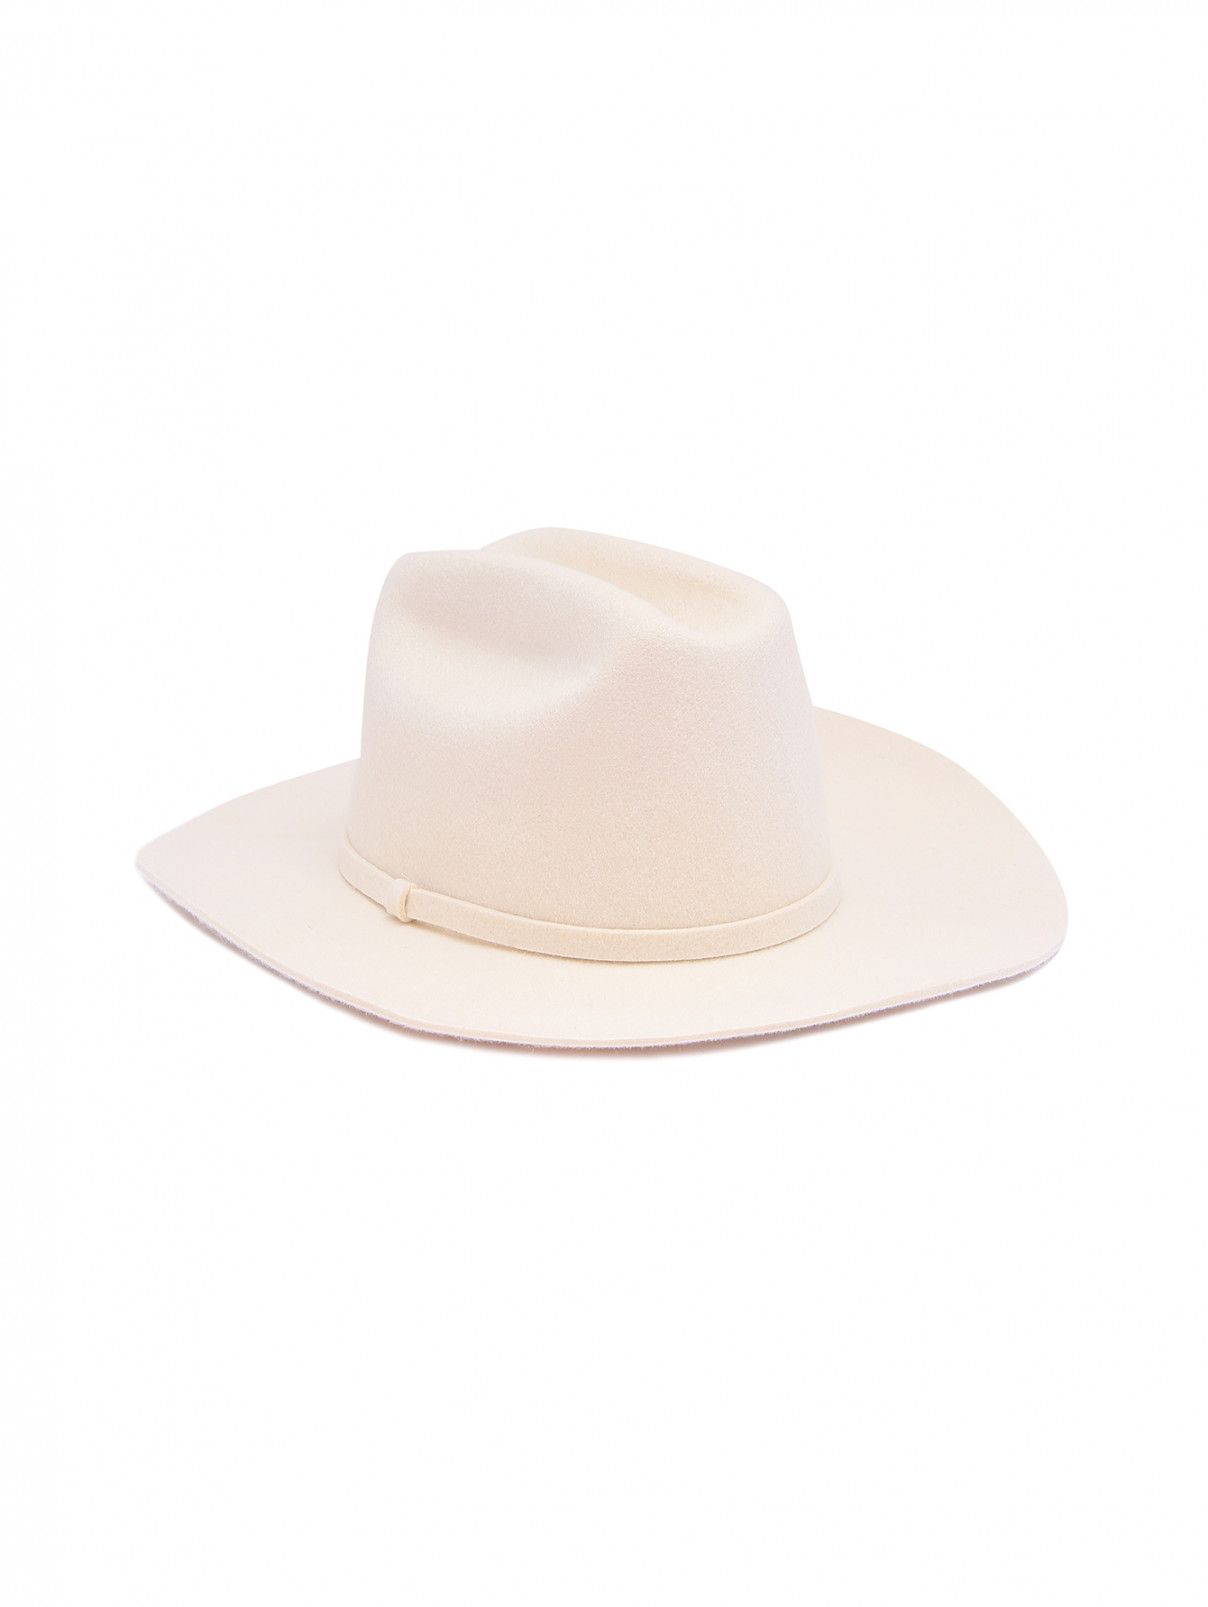 Шляпа-федора из шерсти Dorothee Schumacher  –  Общий вид  – Цвет:  Белый